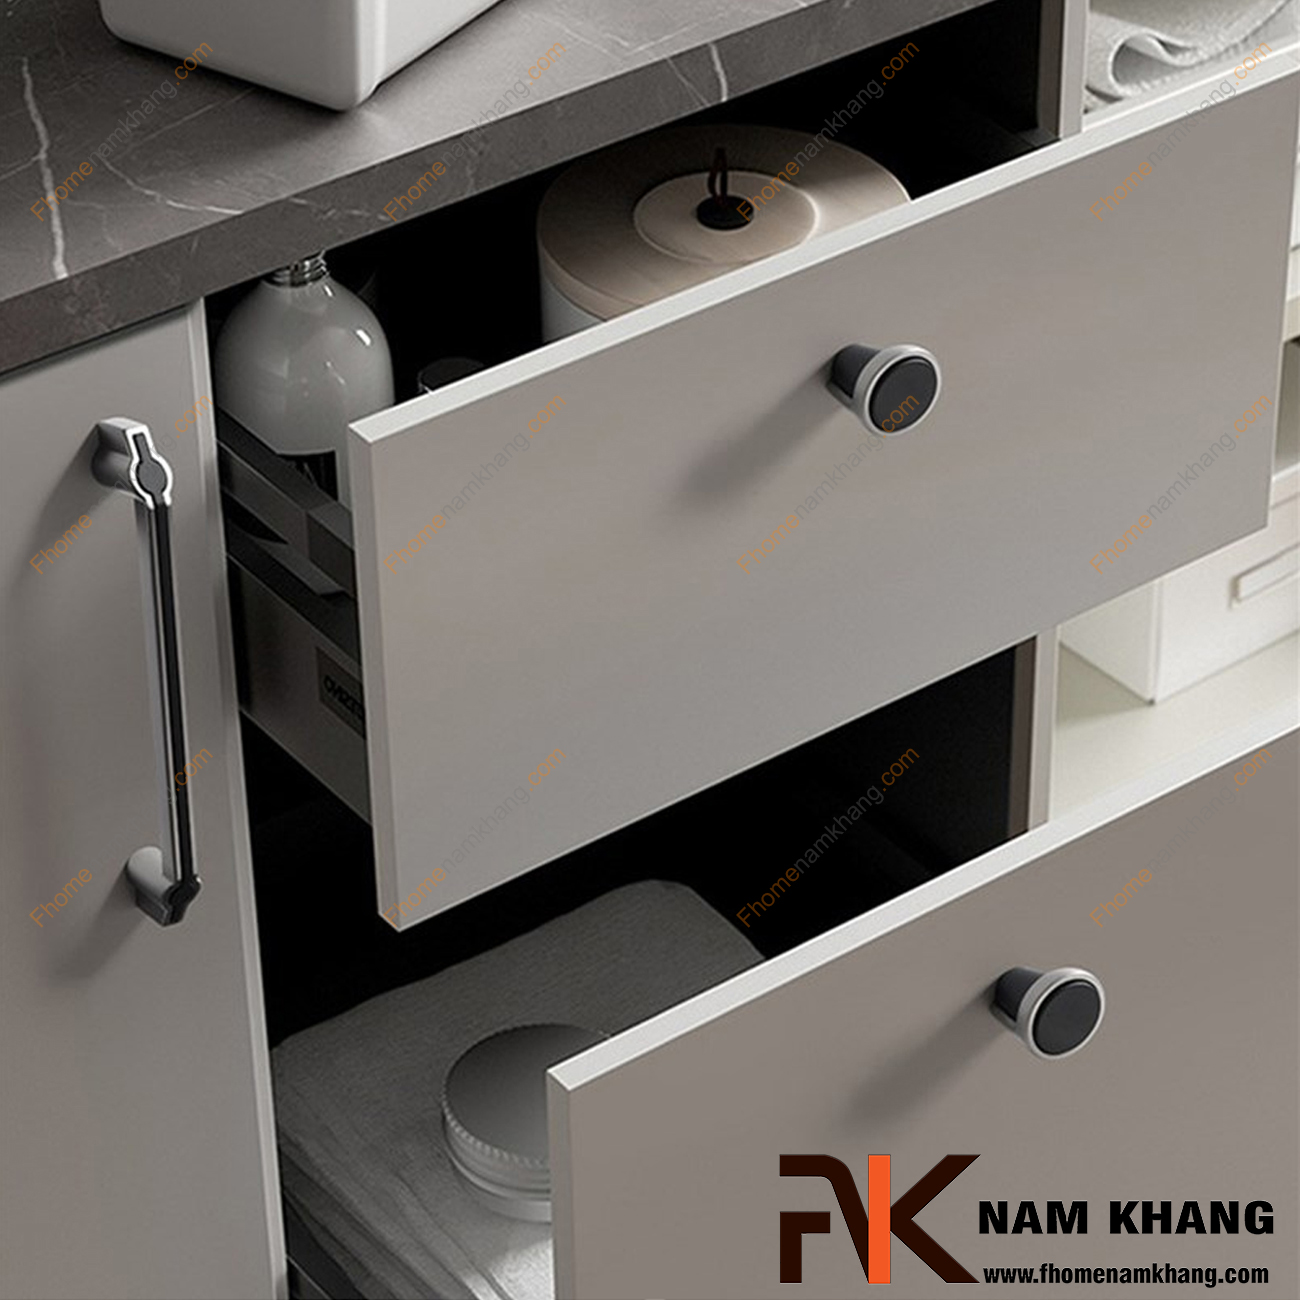 Tay nắm tủ phối hợp đế xám bạc NK398-BGD - dòng tay nắm tủ đặc trưng cho thiết kế tay nắm tủ lắp ghép từ 2 phần riêng biệt